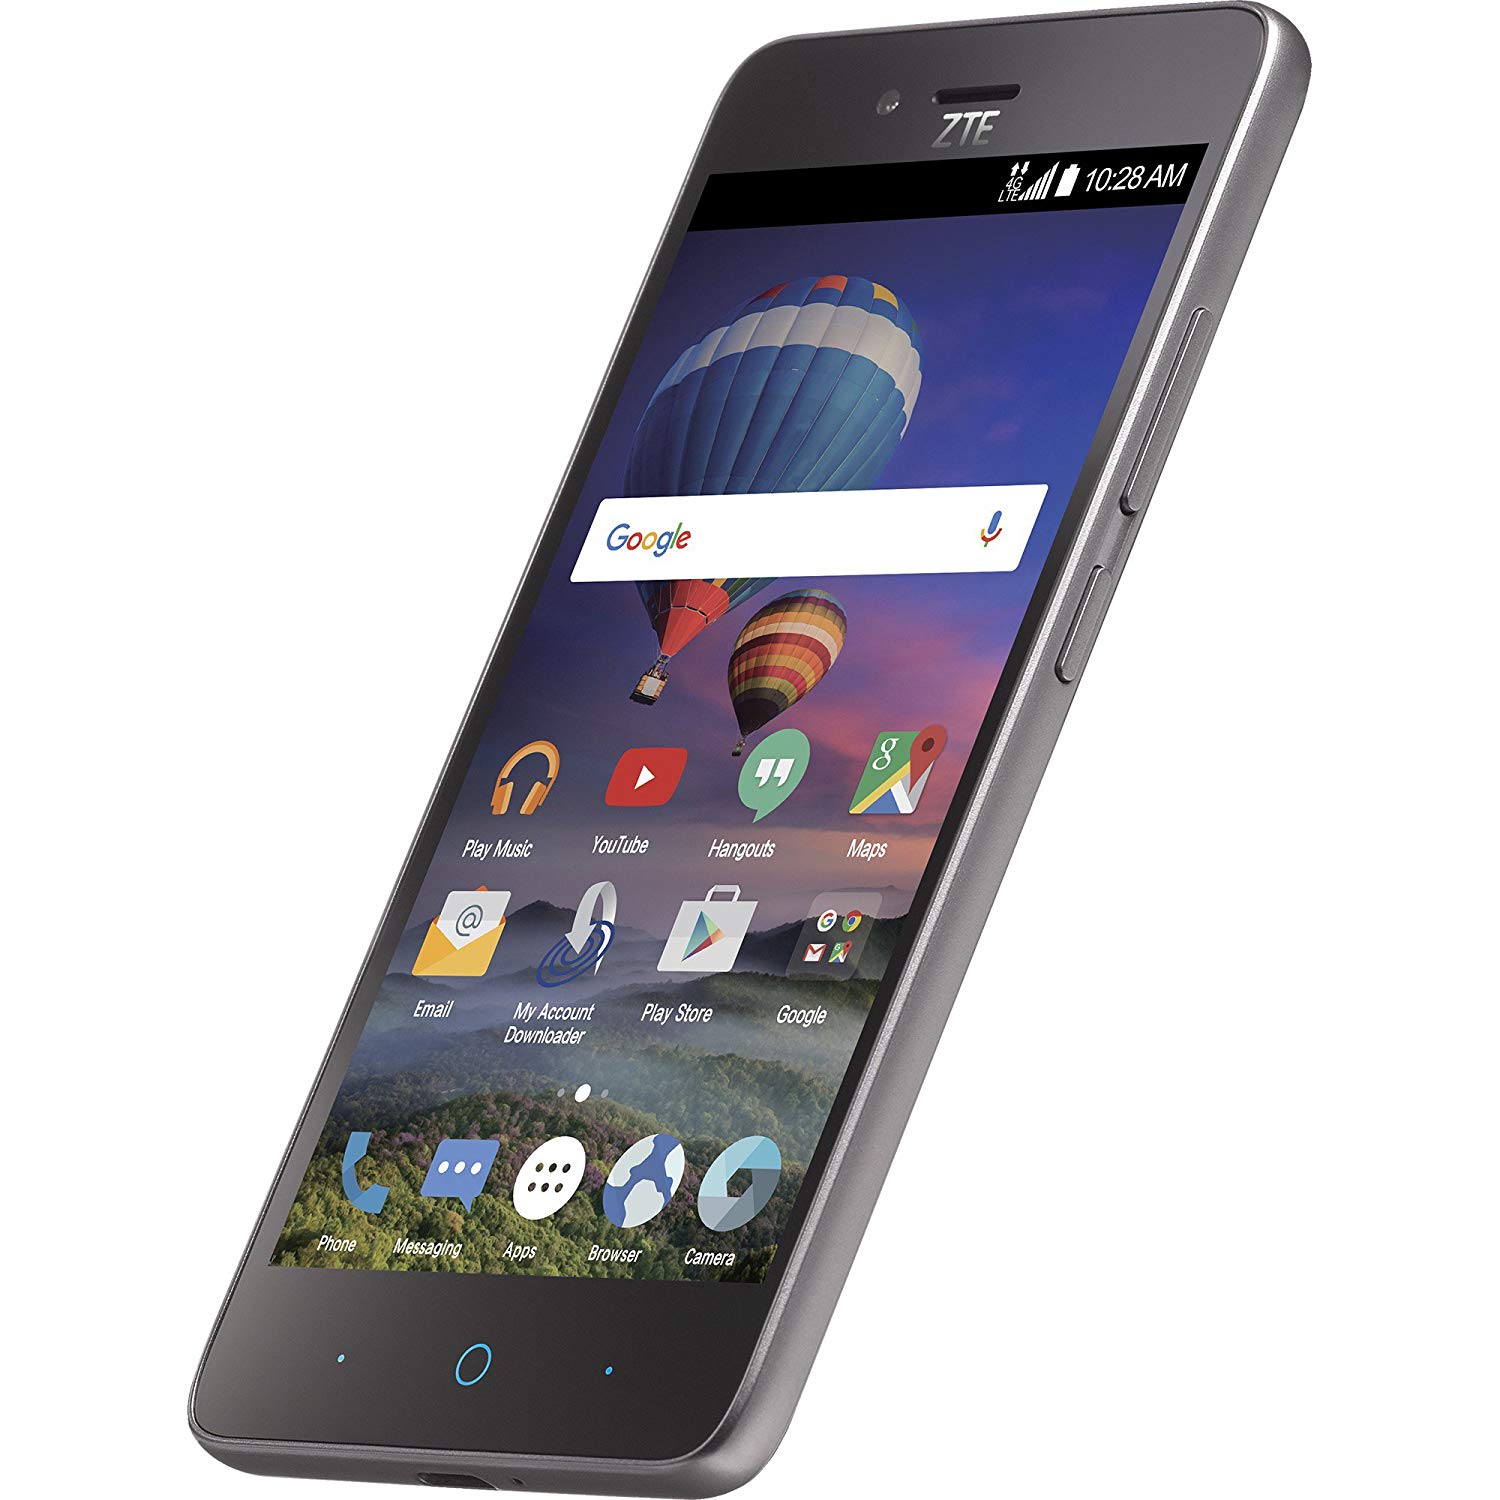 TracFone ZTE ZFIVE L 4G LTE Prepaid Smartphone (Black, Includes 1 Year of Service w/ 1200 MIN